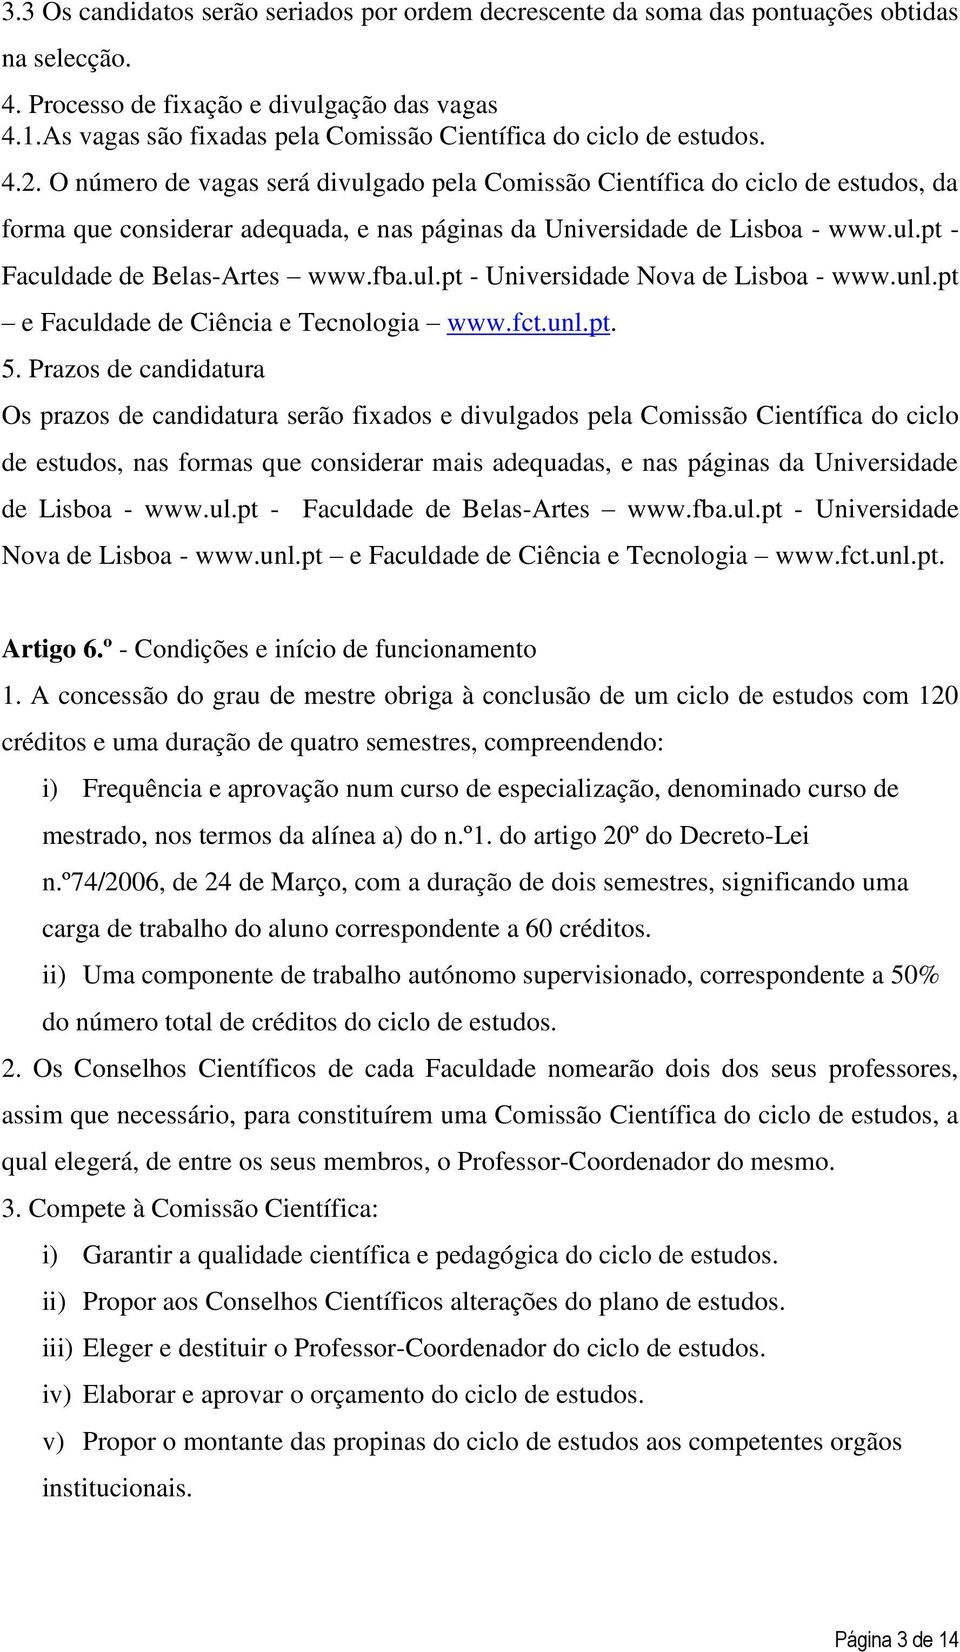 O número de vagas será divulgado pela Comissão Científica do ciclo de estudos, da forma que considerar adequada, e nas páginas da Universidade de Lisboa - www.ul.pt - Faculdade de Belas-Artes www.fba.